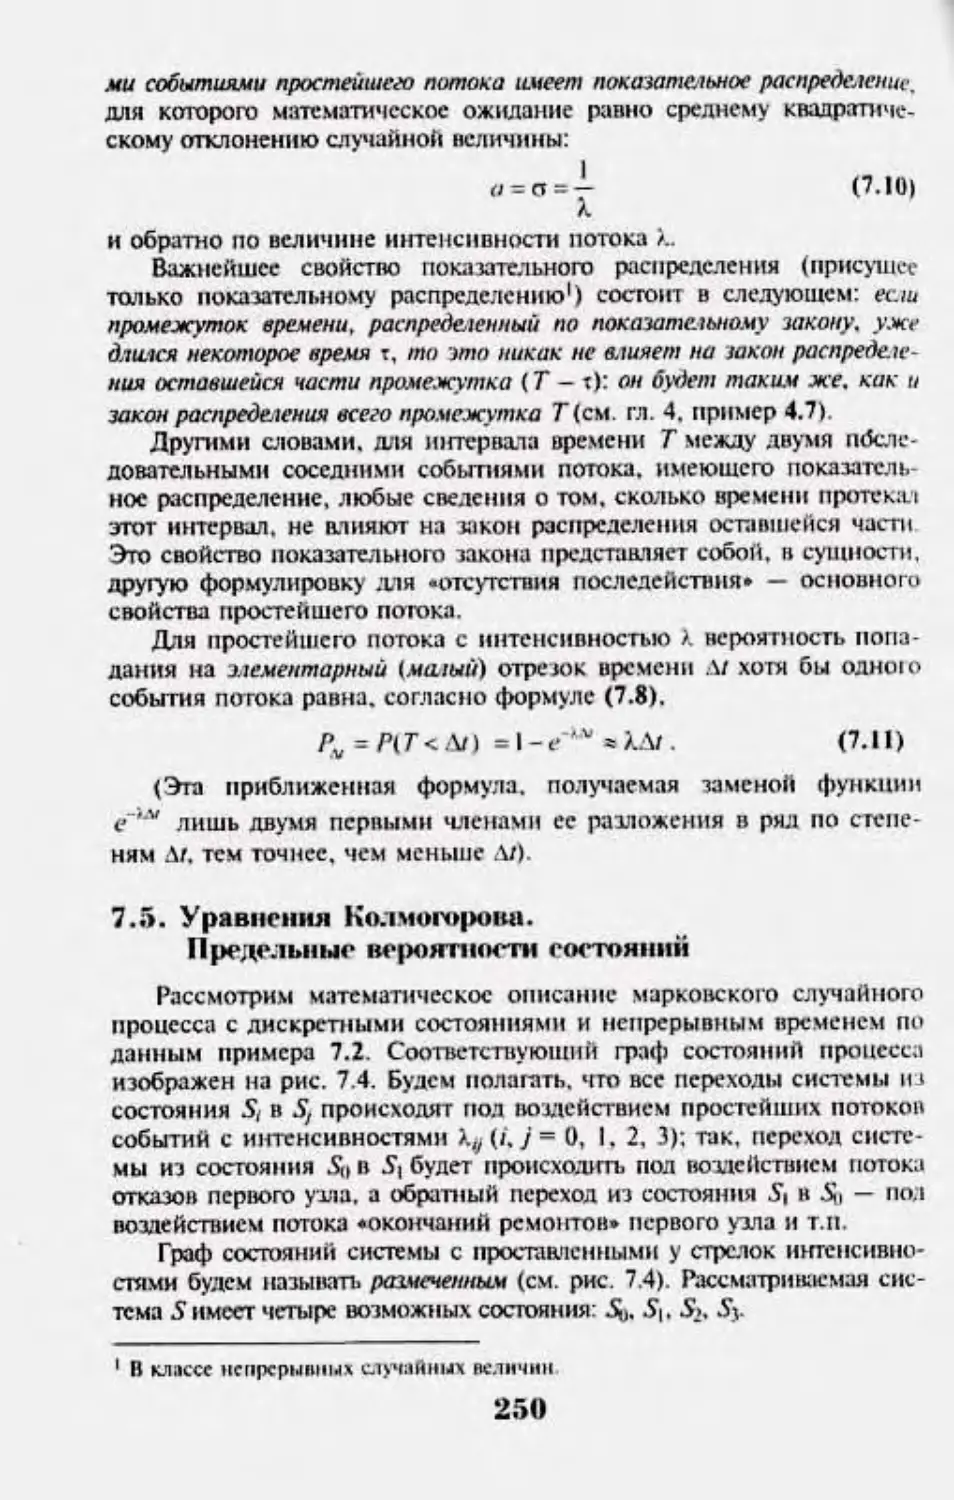 7.5 Уравнения Колмогорова. Предельные вероятности состояний.